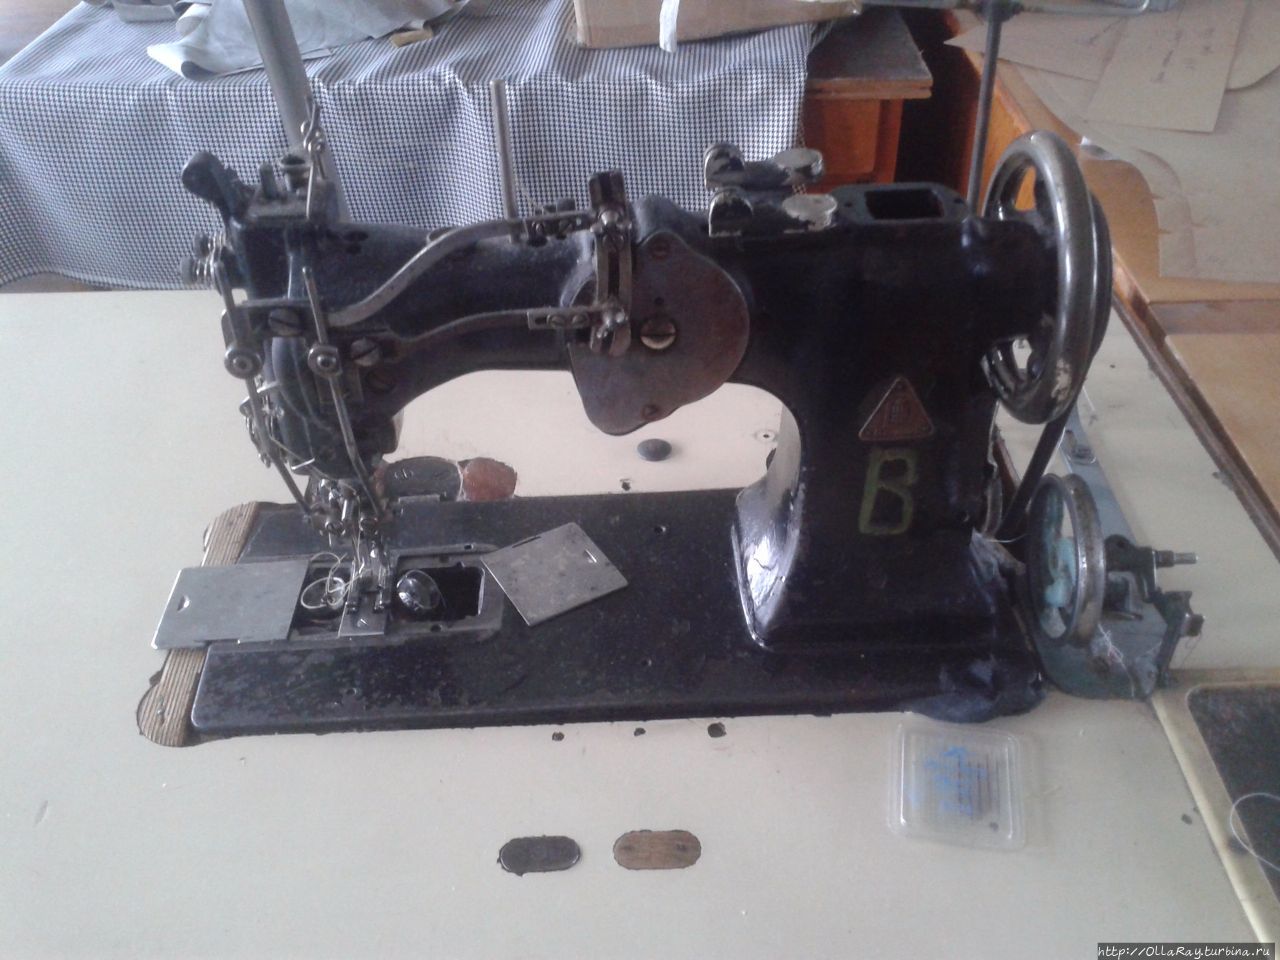 Раритетная швейная машинка начала века в цехе фабрики. Катунки, Россия